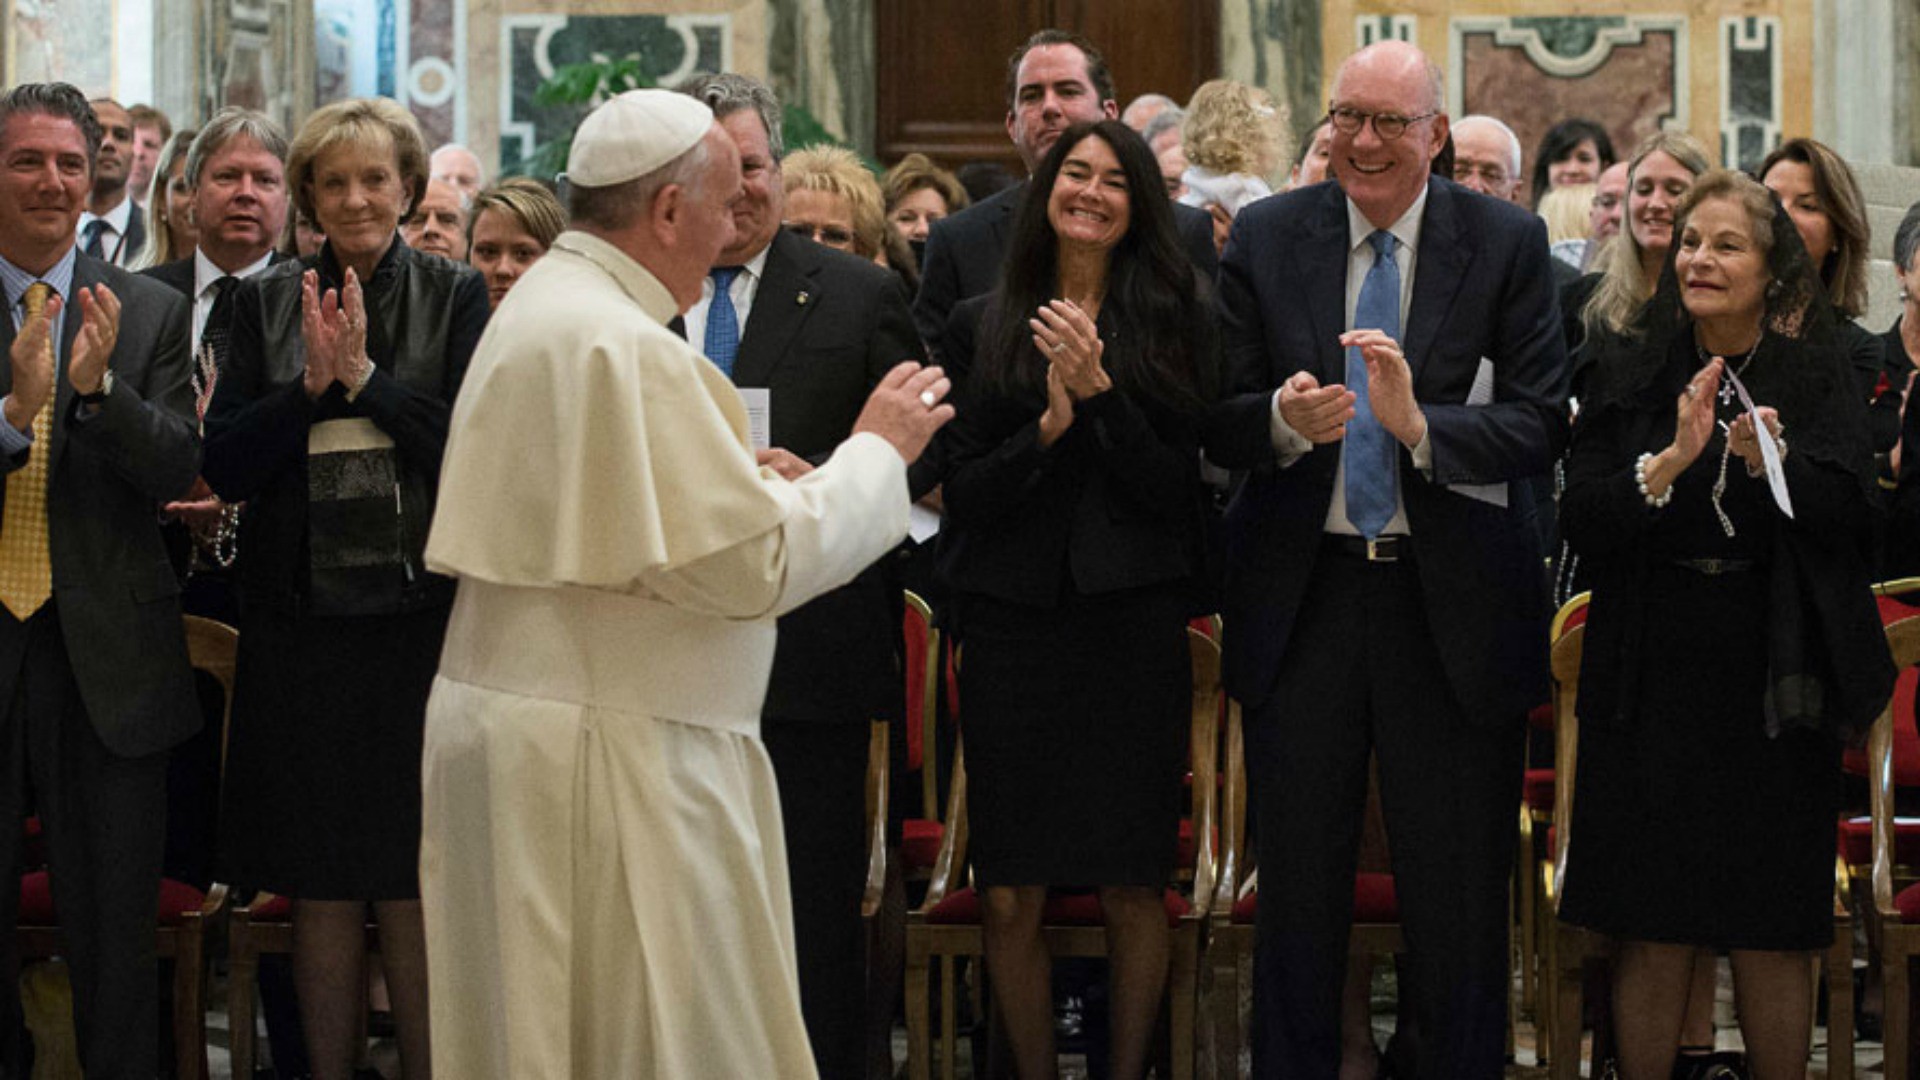 Le pape François rencontre des membres de la Papal foundation, des Etats-Unis (thepapalfoundation.com)